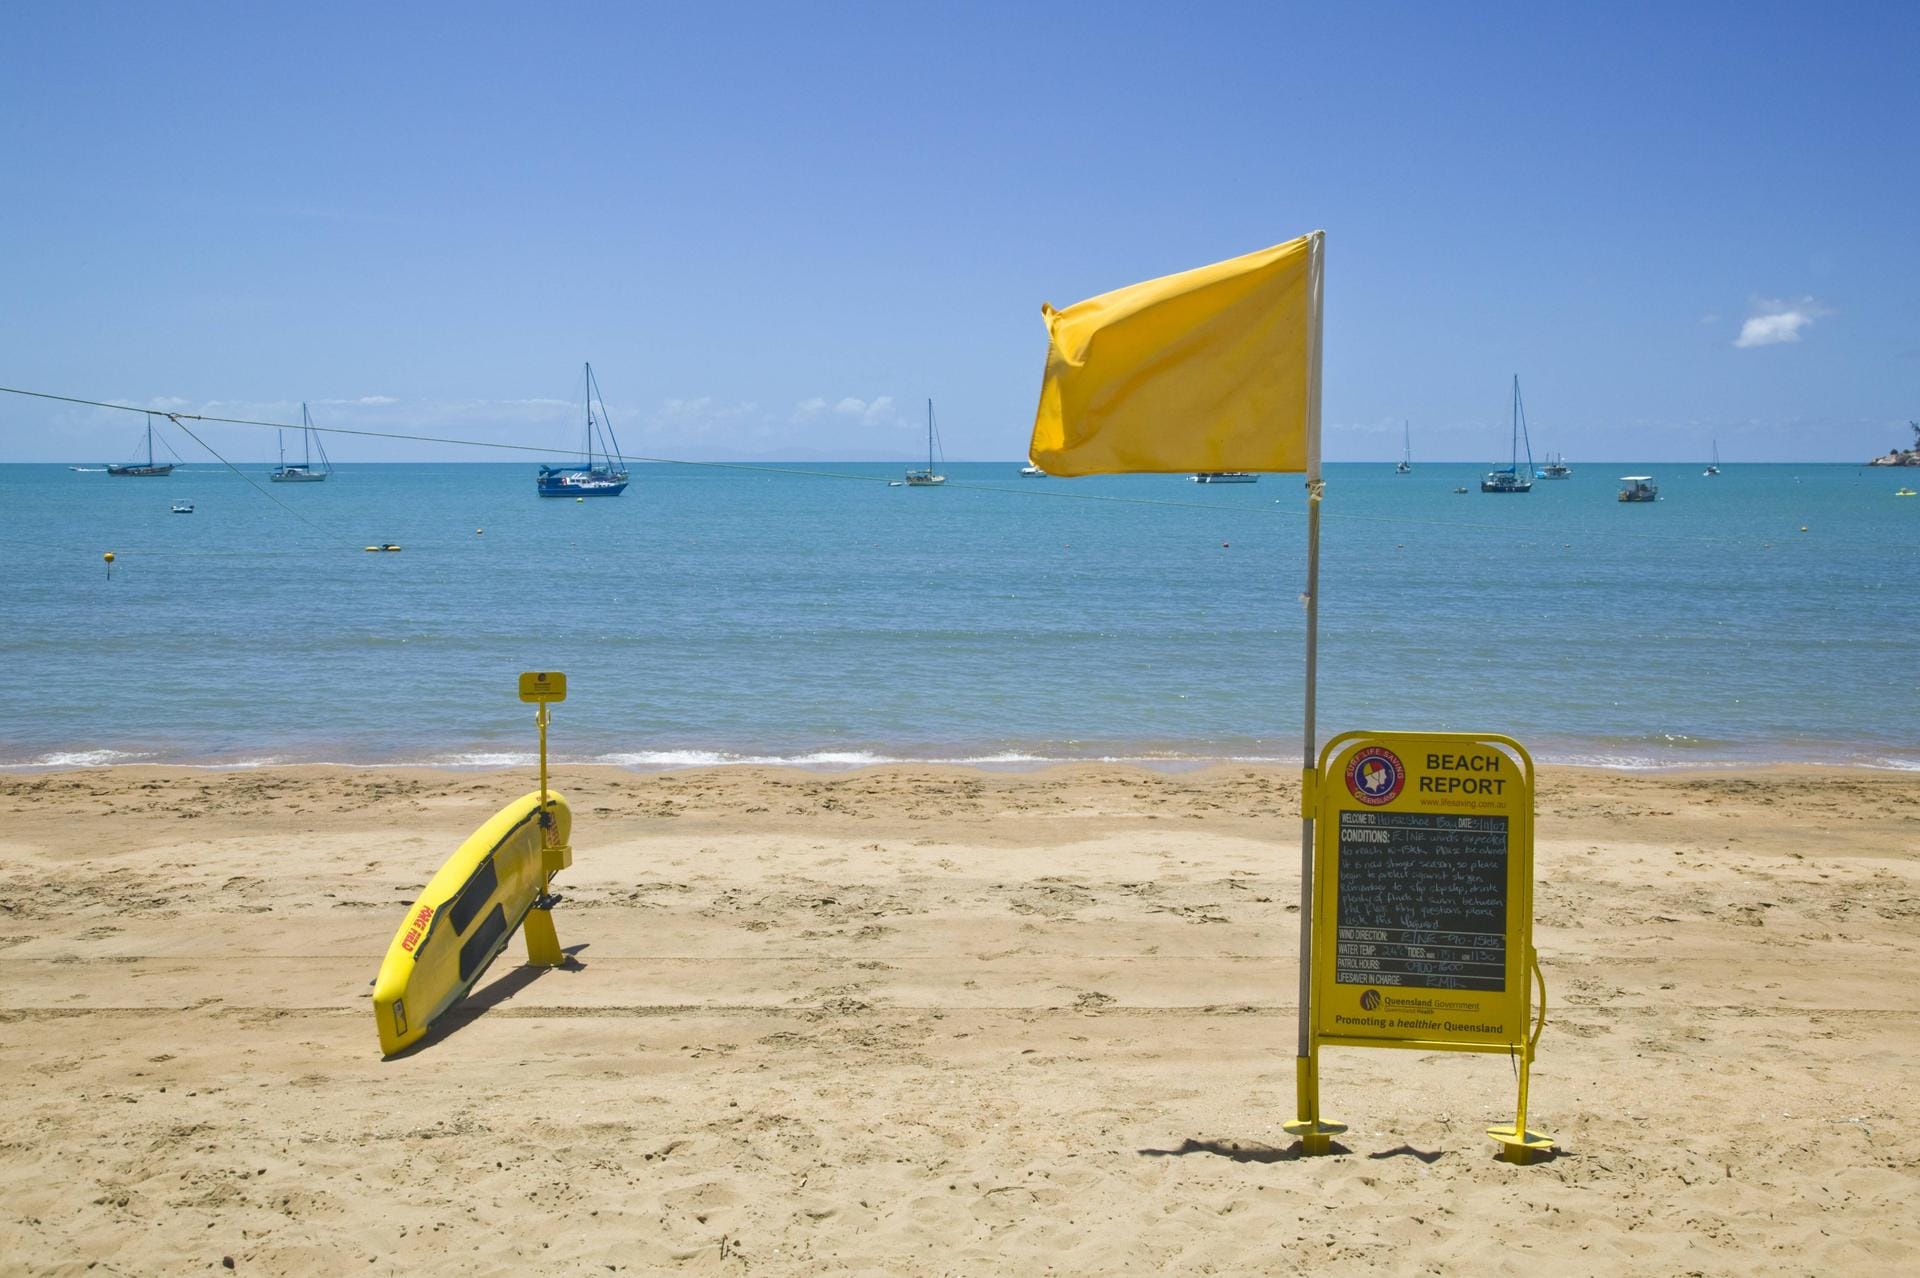 Gelbe Flagge: Hier sollten Sie Vorsicht walten lassen, denn die gelbe Flagge signalisiert gefährliche Bedingungen. Schwimmen ist zwar erlaubt, aber nur sichere Schwimmer sollten sich ins Wasser trauen.